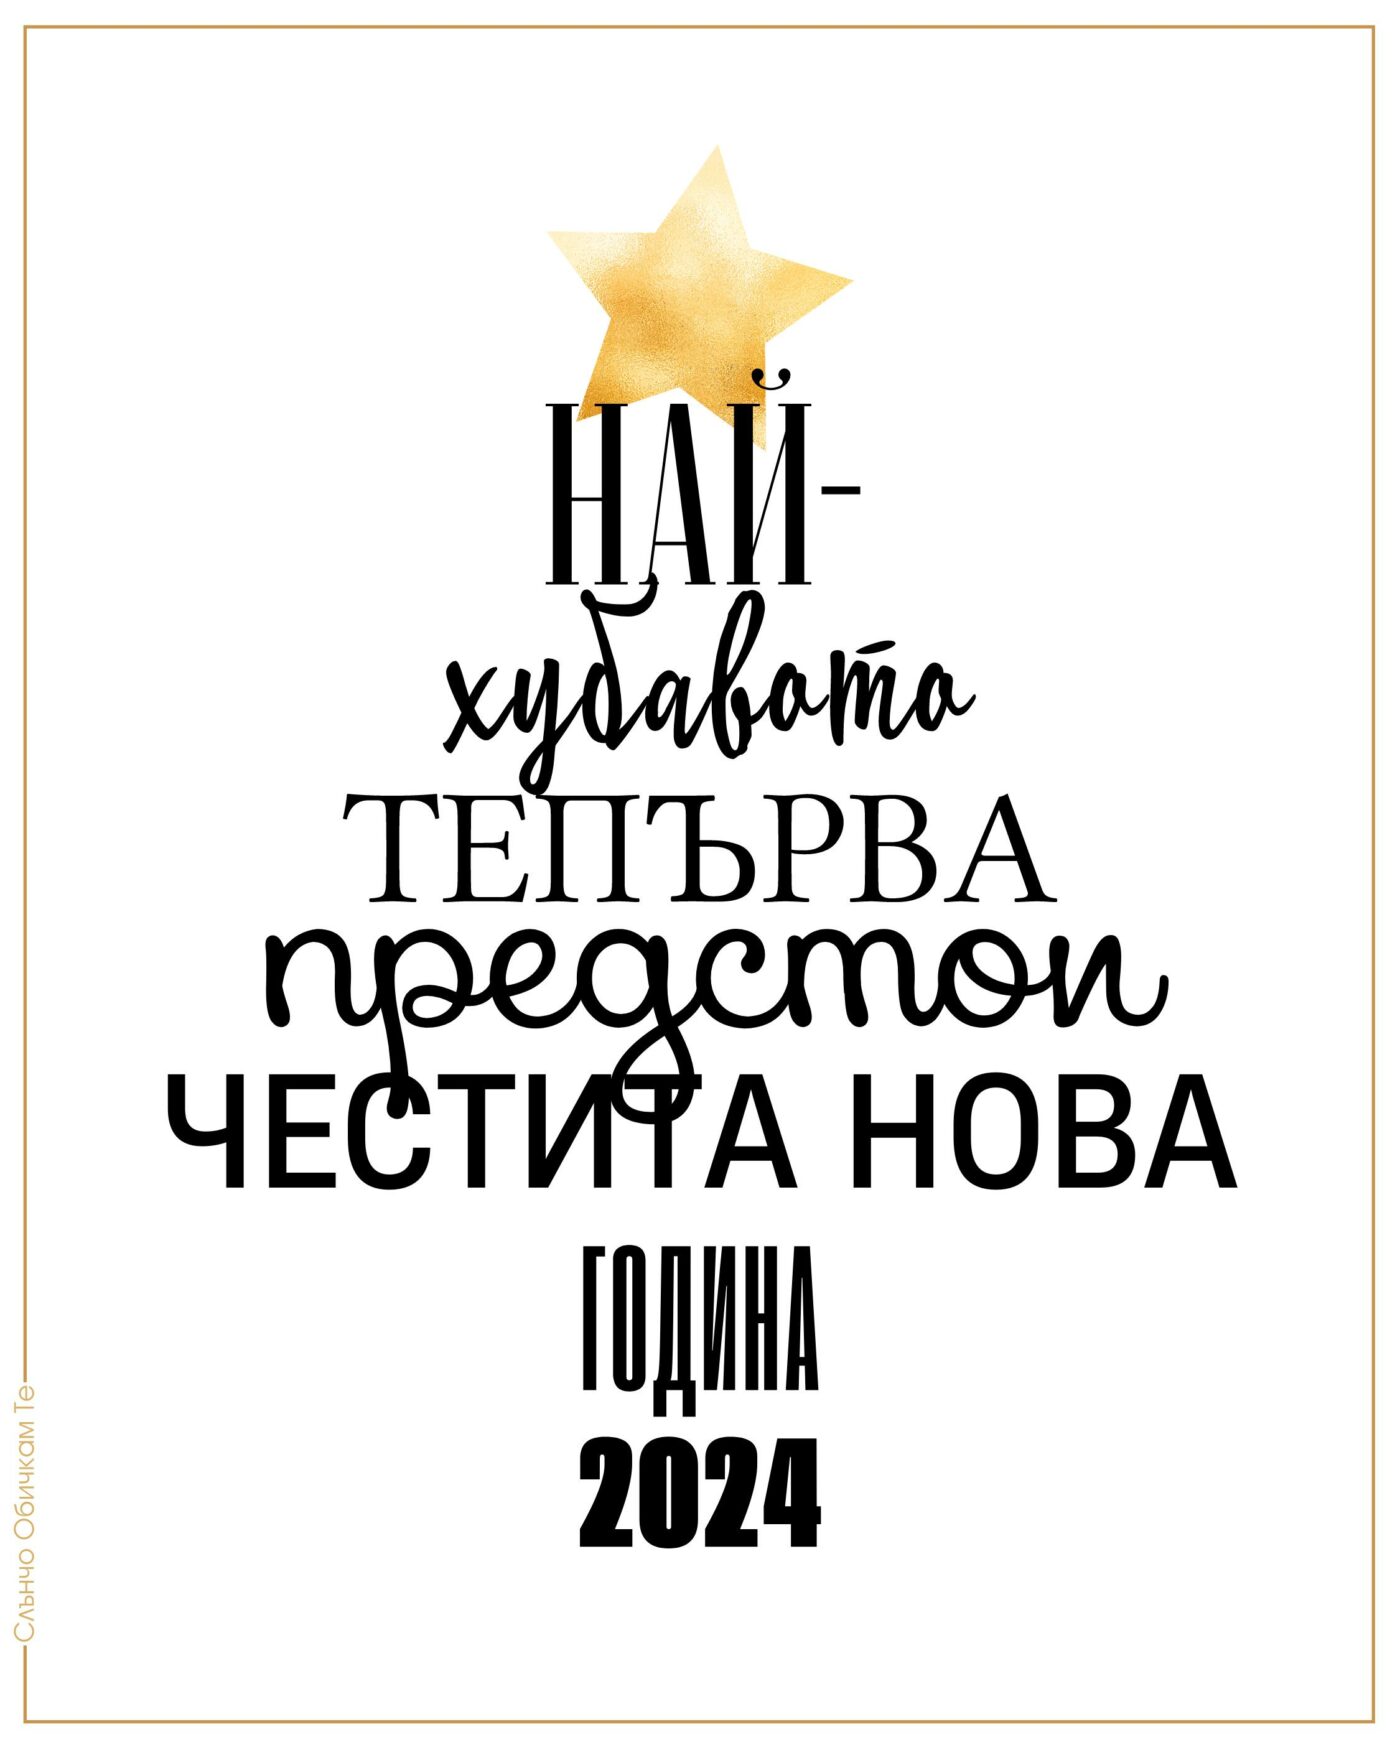 Честита Нова година 2024, новогодишни картички, нова година 2024, Най-хубавото тепърва предстои, картички за нова година